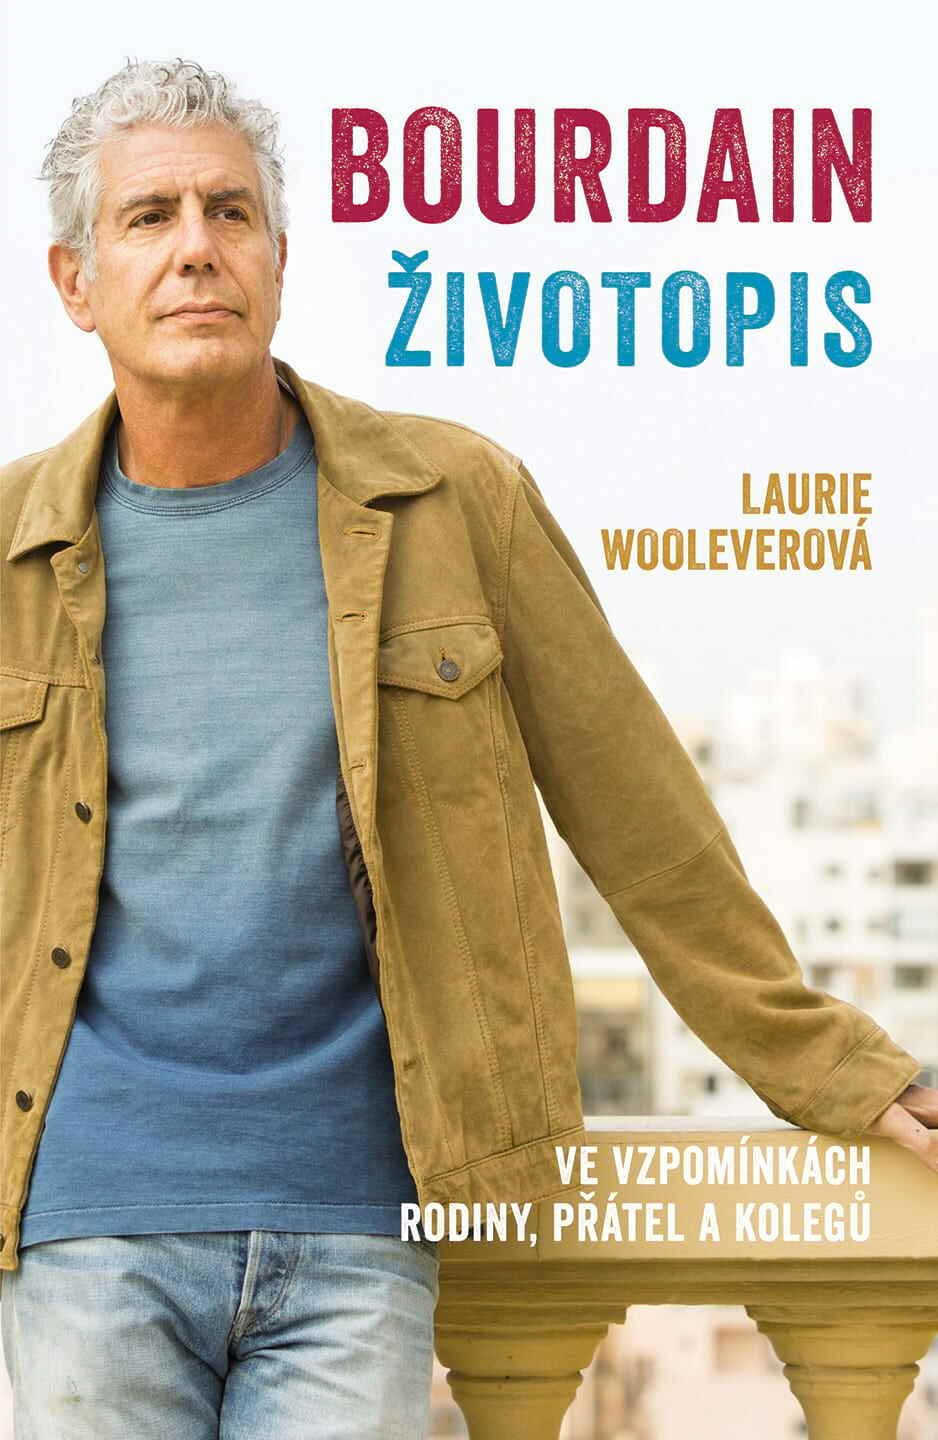 Bourdain-životopis, kniha o všech neodolatelných závislostech, kterým tento jedinečný muž nedokázal odolat, 319 Kč, slovart.cz